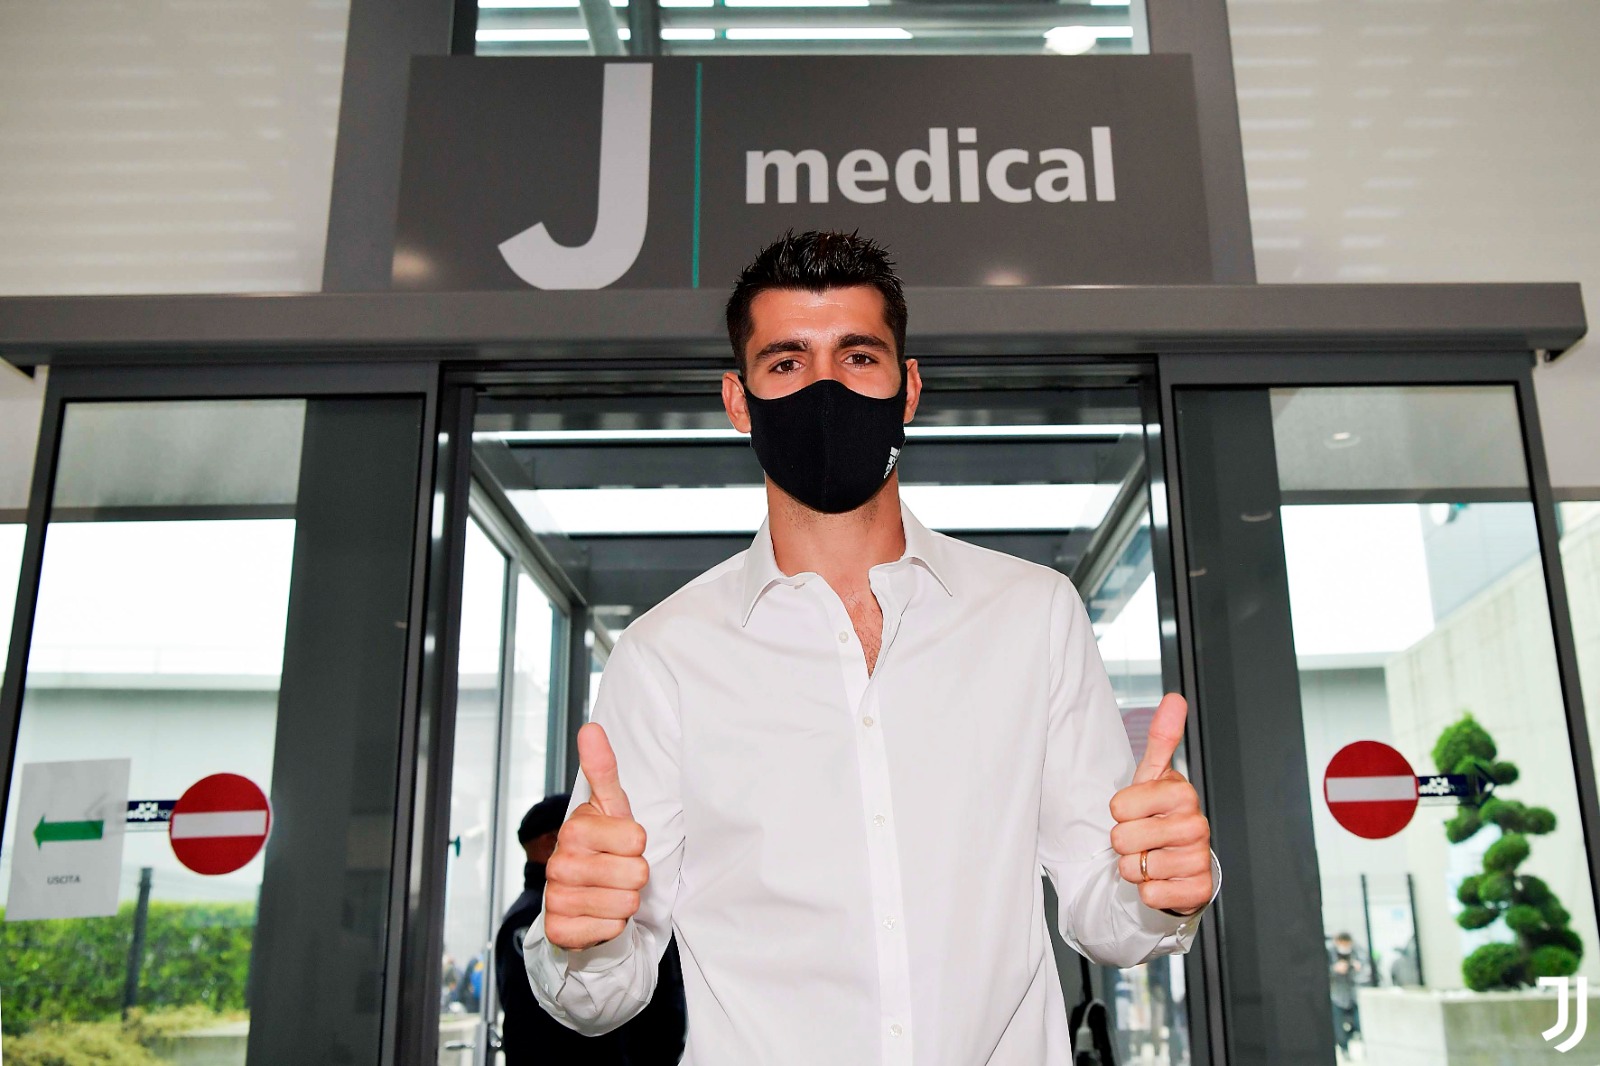 Journeyman Morata returns to Juventus on loan